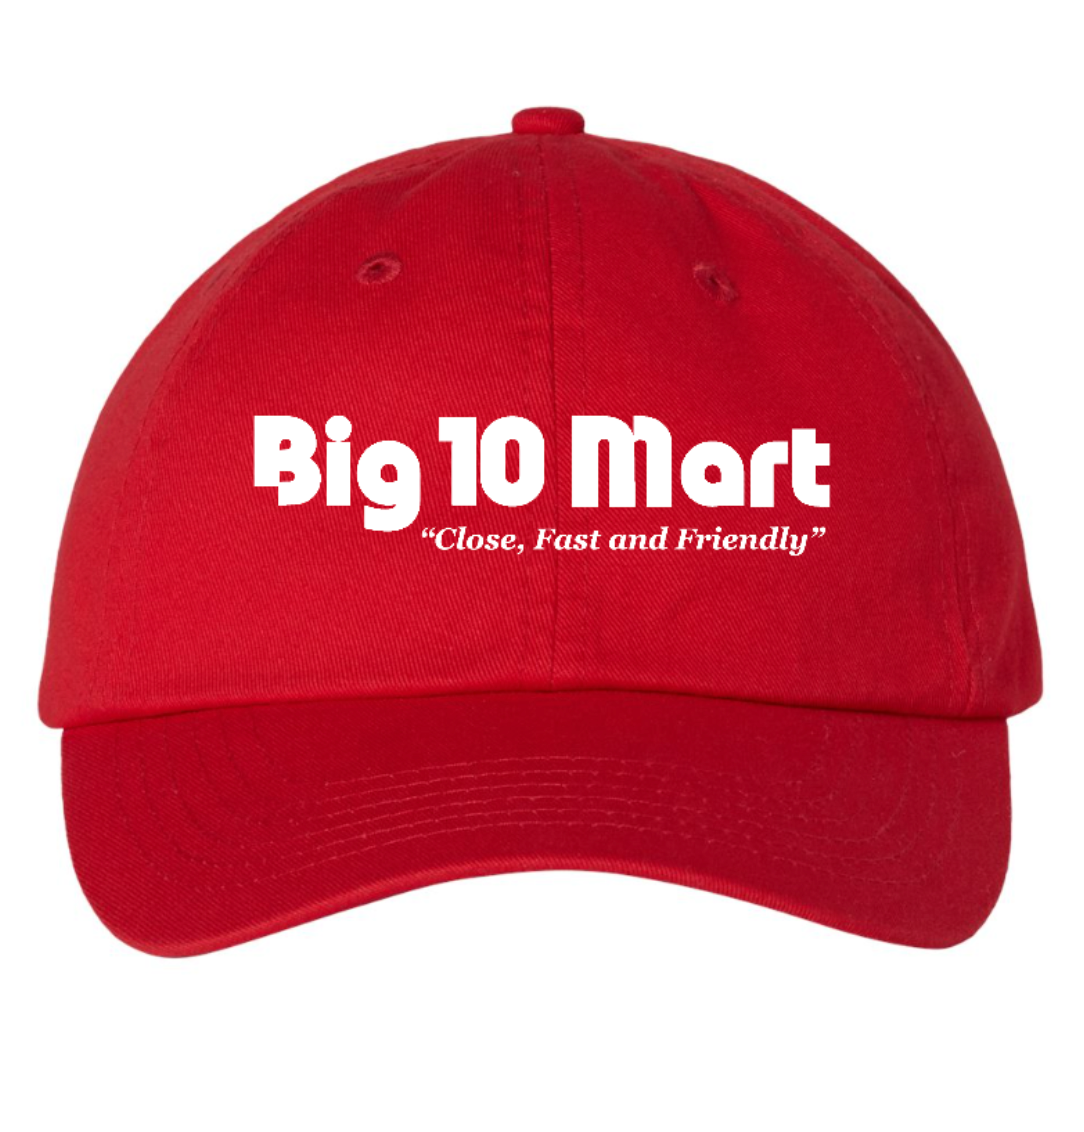 Big 10 Twill Hat